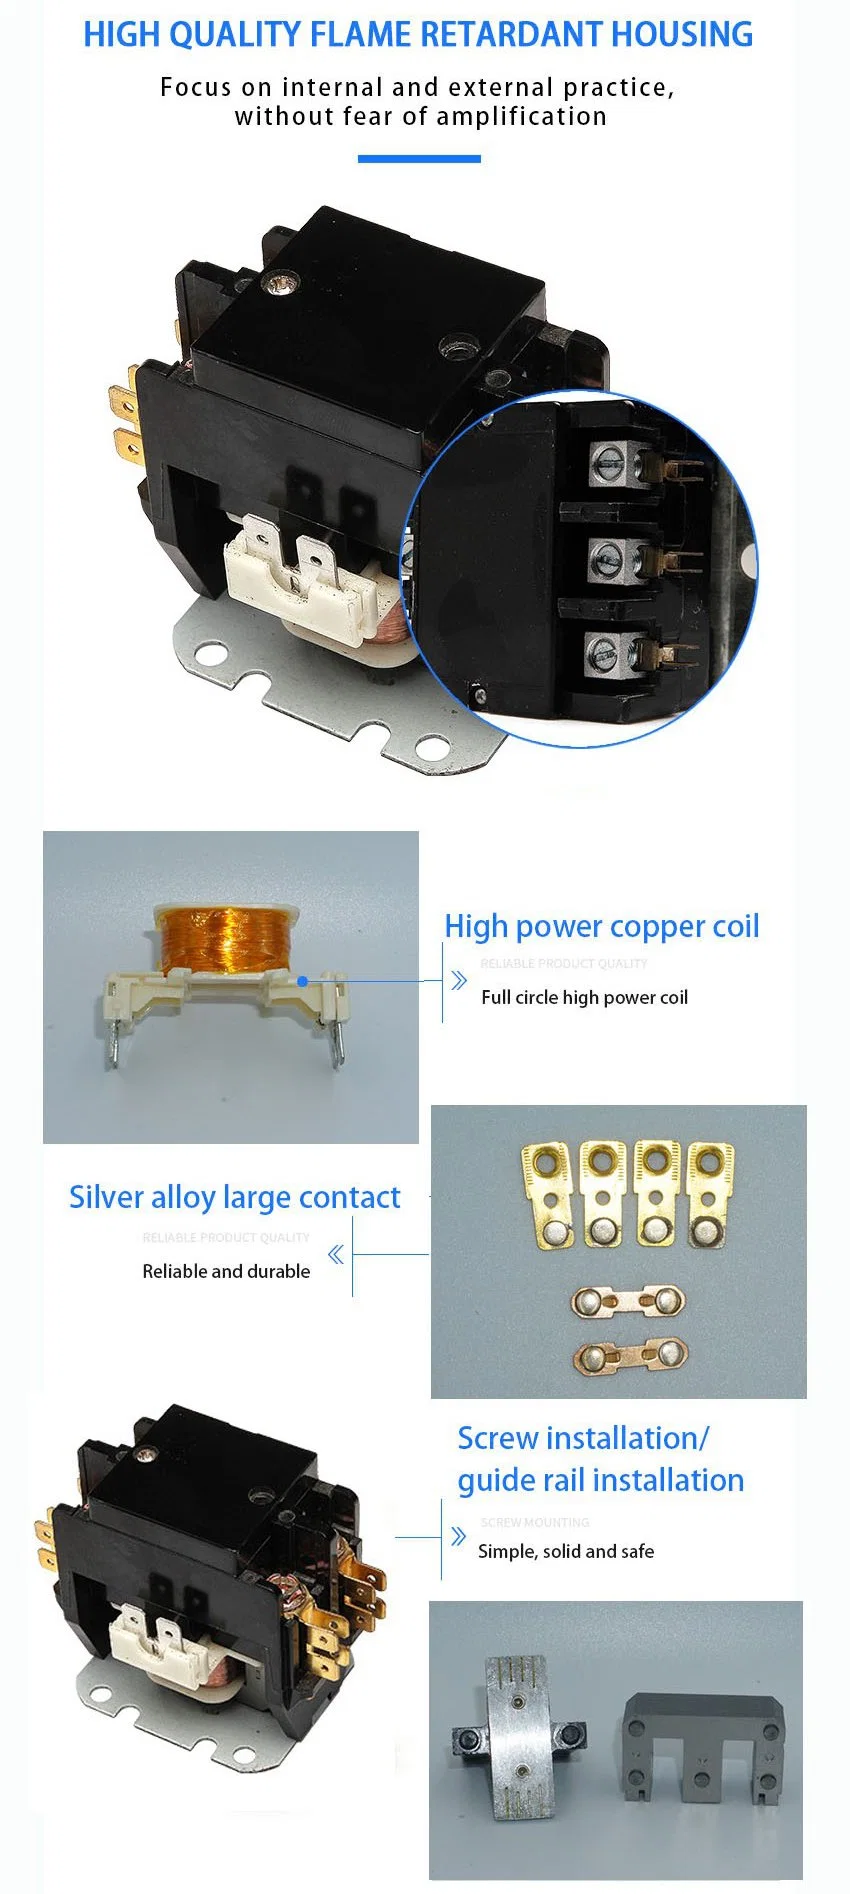 2 Phase 24V OEM Air Conditioner Compressor HVAC Contactor Sac-25/1.5p